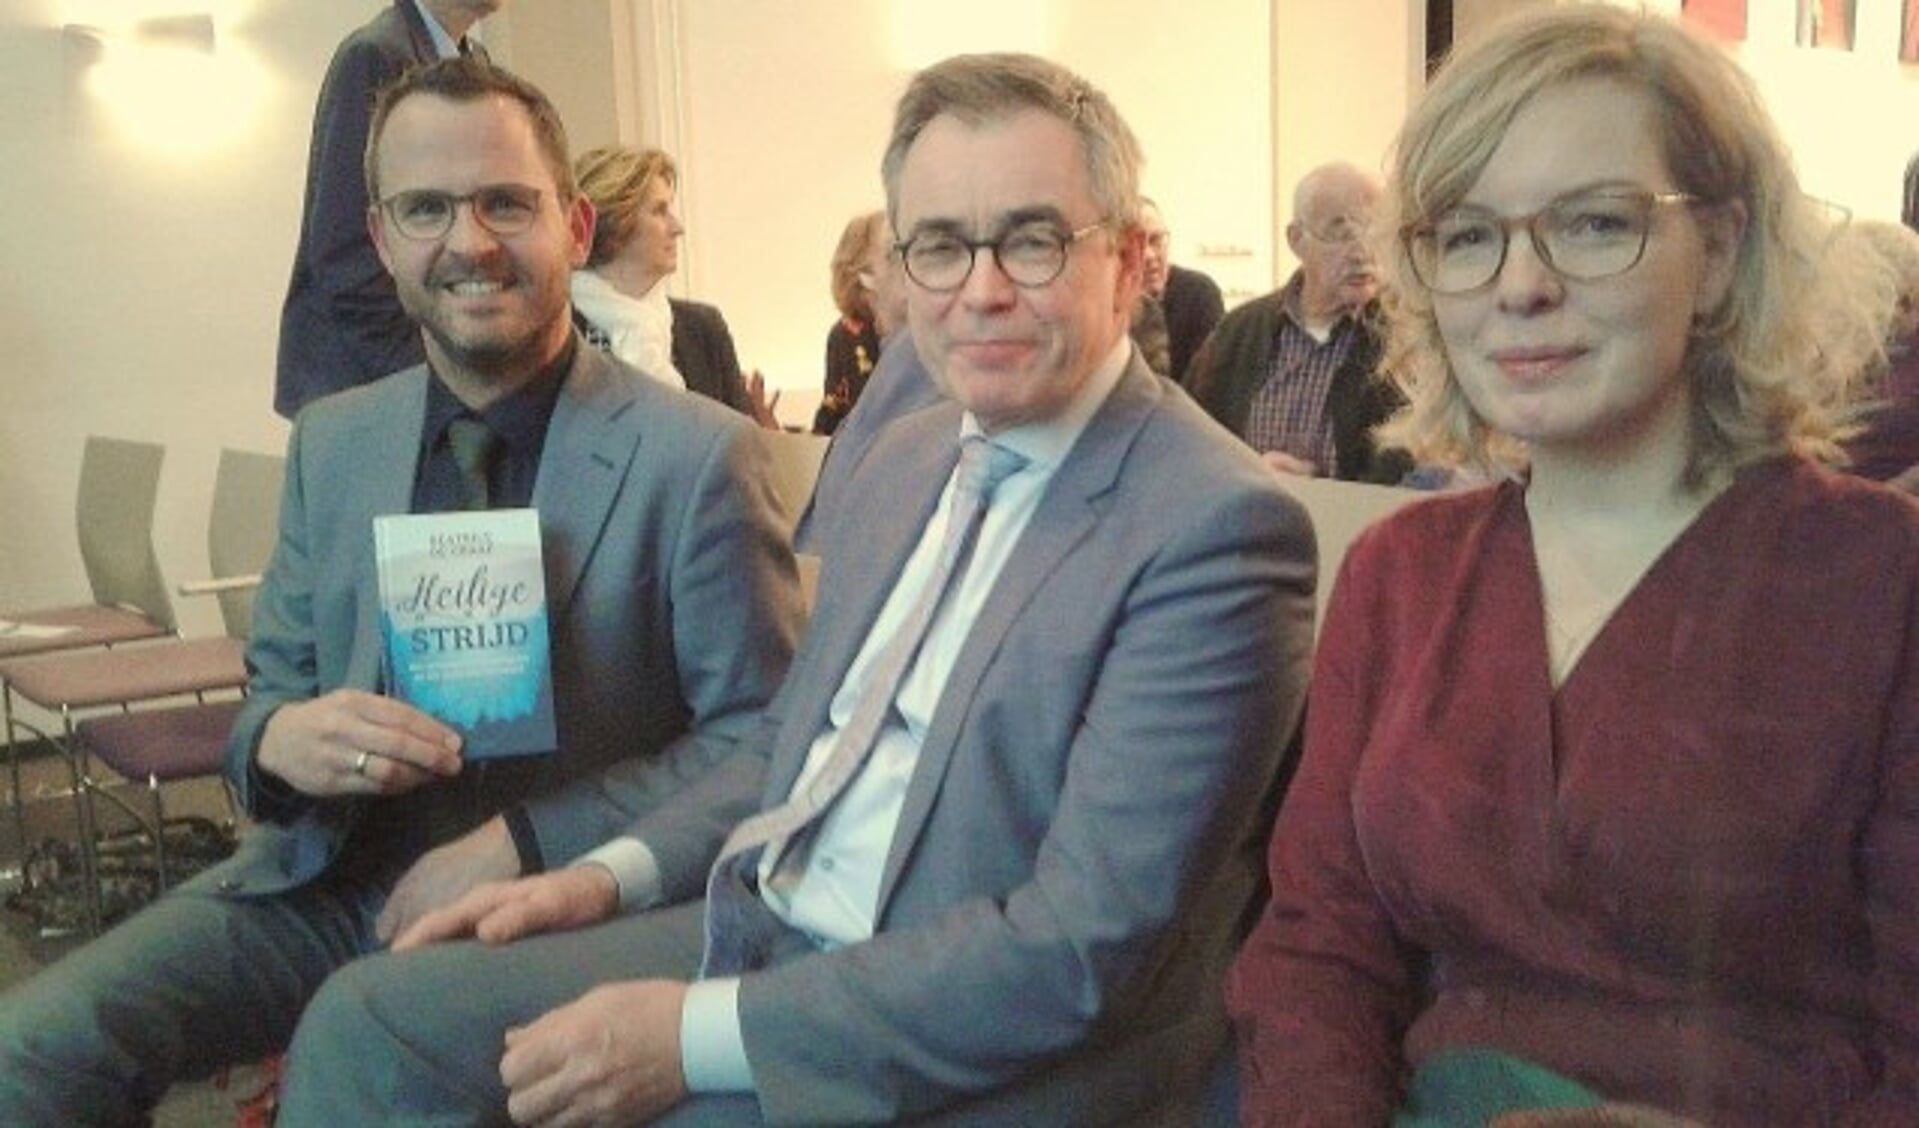 De sprekers burgemeester Laurens de Graaf, burgemeester van Haarlem Jos Wienen en  Beatrice de Graaf. (Foto: Rinus Verweij)